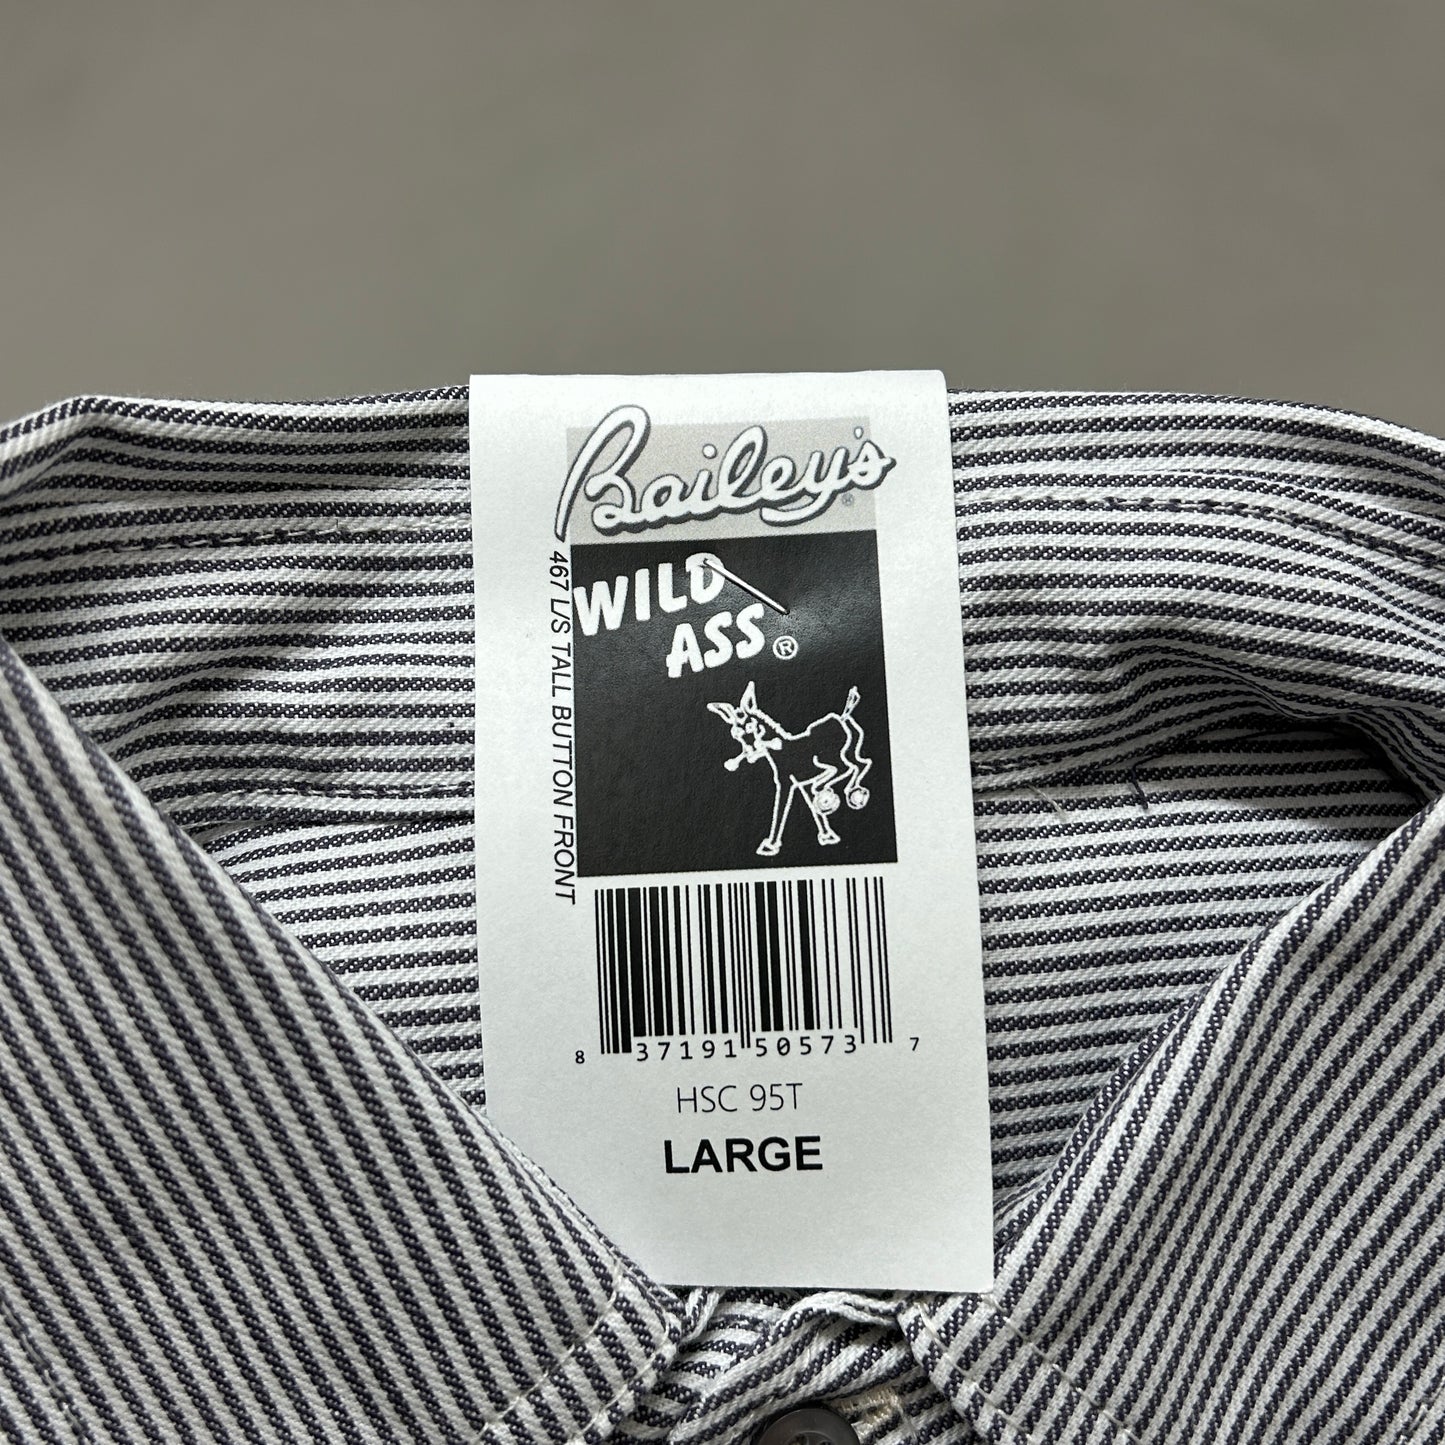 WILD ASS Bailey's Logger Wear Long Sleeve Button Hickory Shirt Sz L Tall Striped HSC 95T (New)